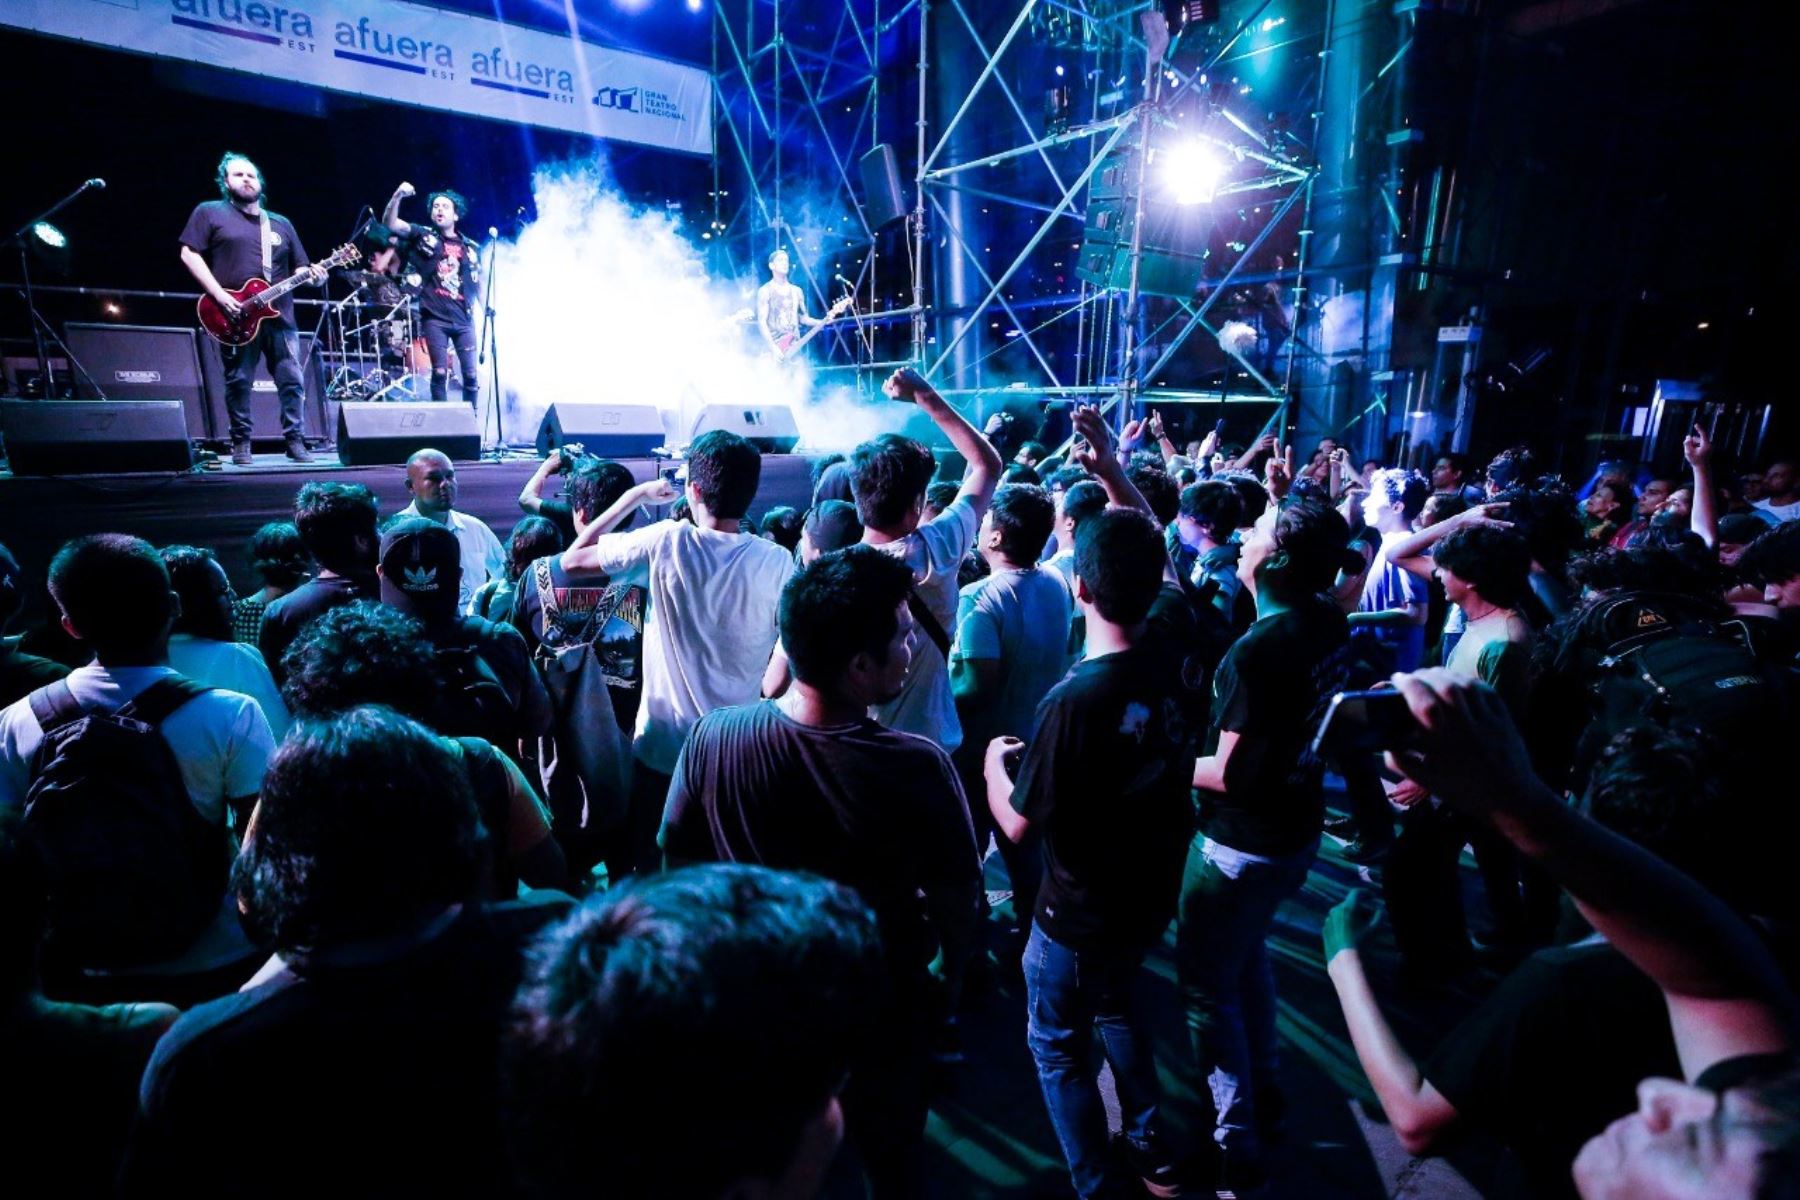 Festival gratuito reunirá a destacados cultores de la música peruana. Foto: Ministerio de Cultura/Difusión.